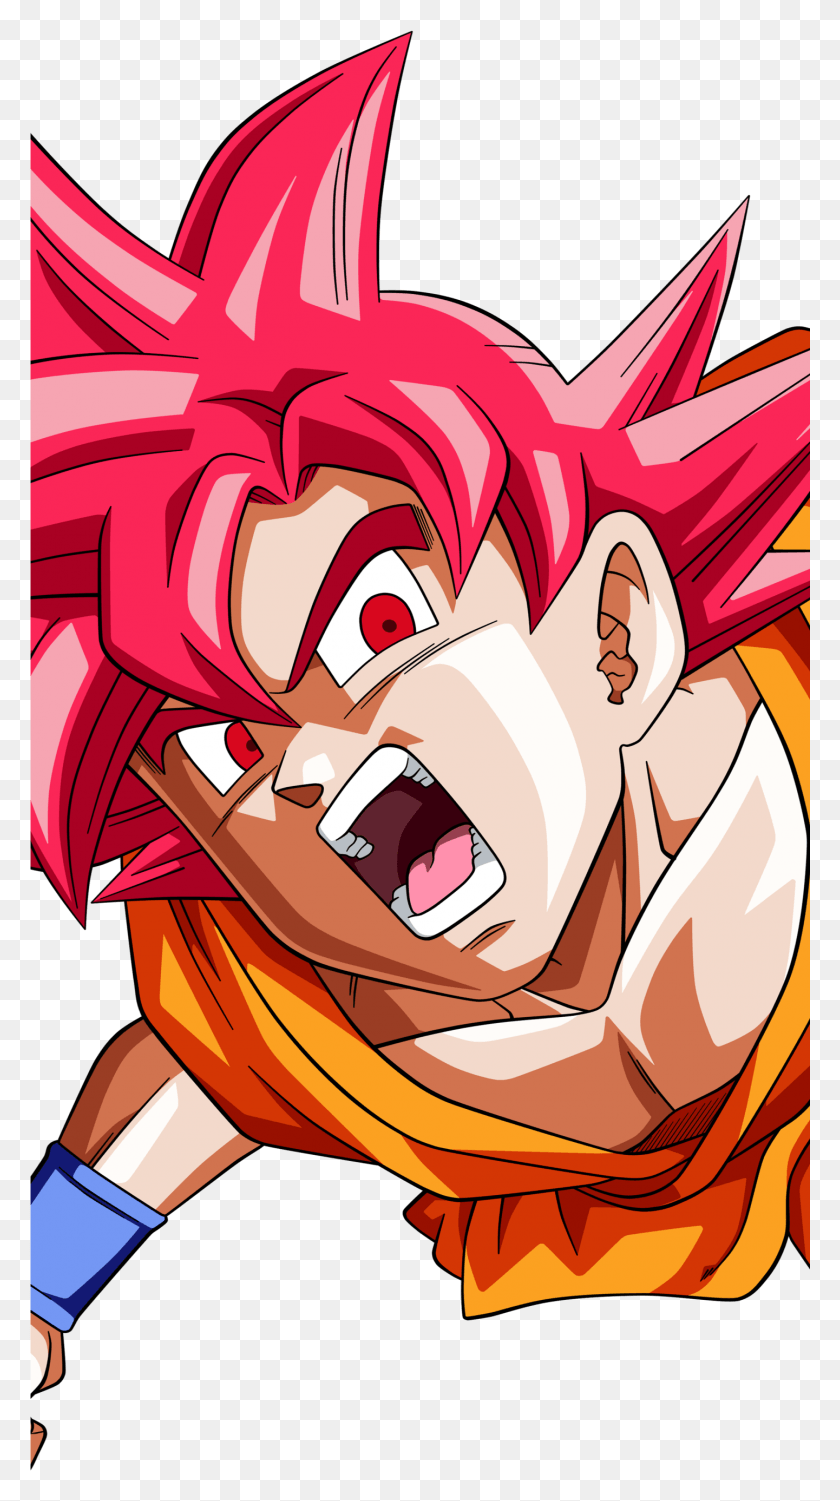 1441x2663 Goku Ssj God Anime Dragon Ball Super Mobile Wallpaper Anime Goku Dragon Ball Super, Comics, Book, Manga HD PNG Download